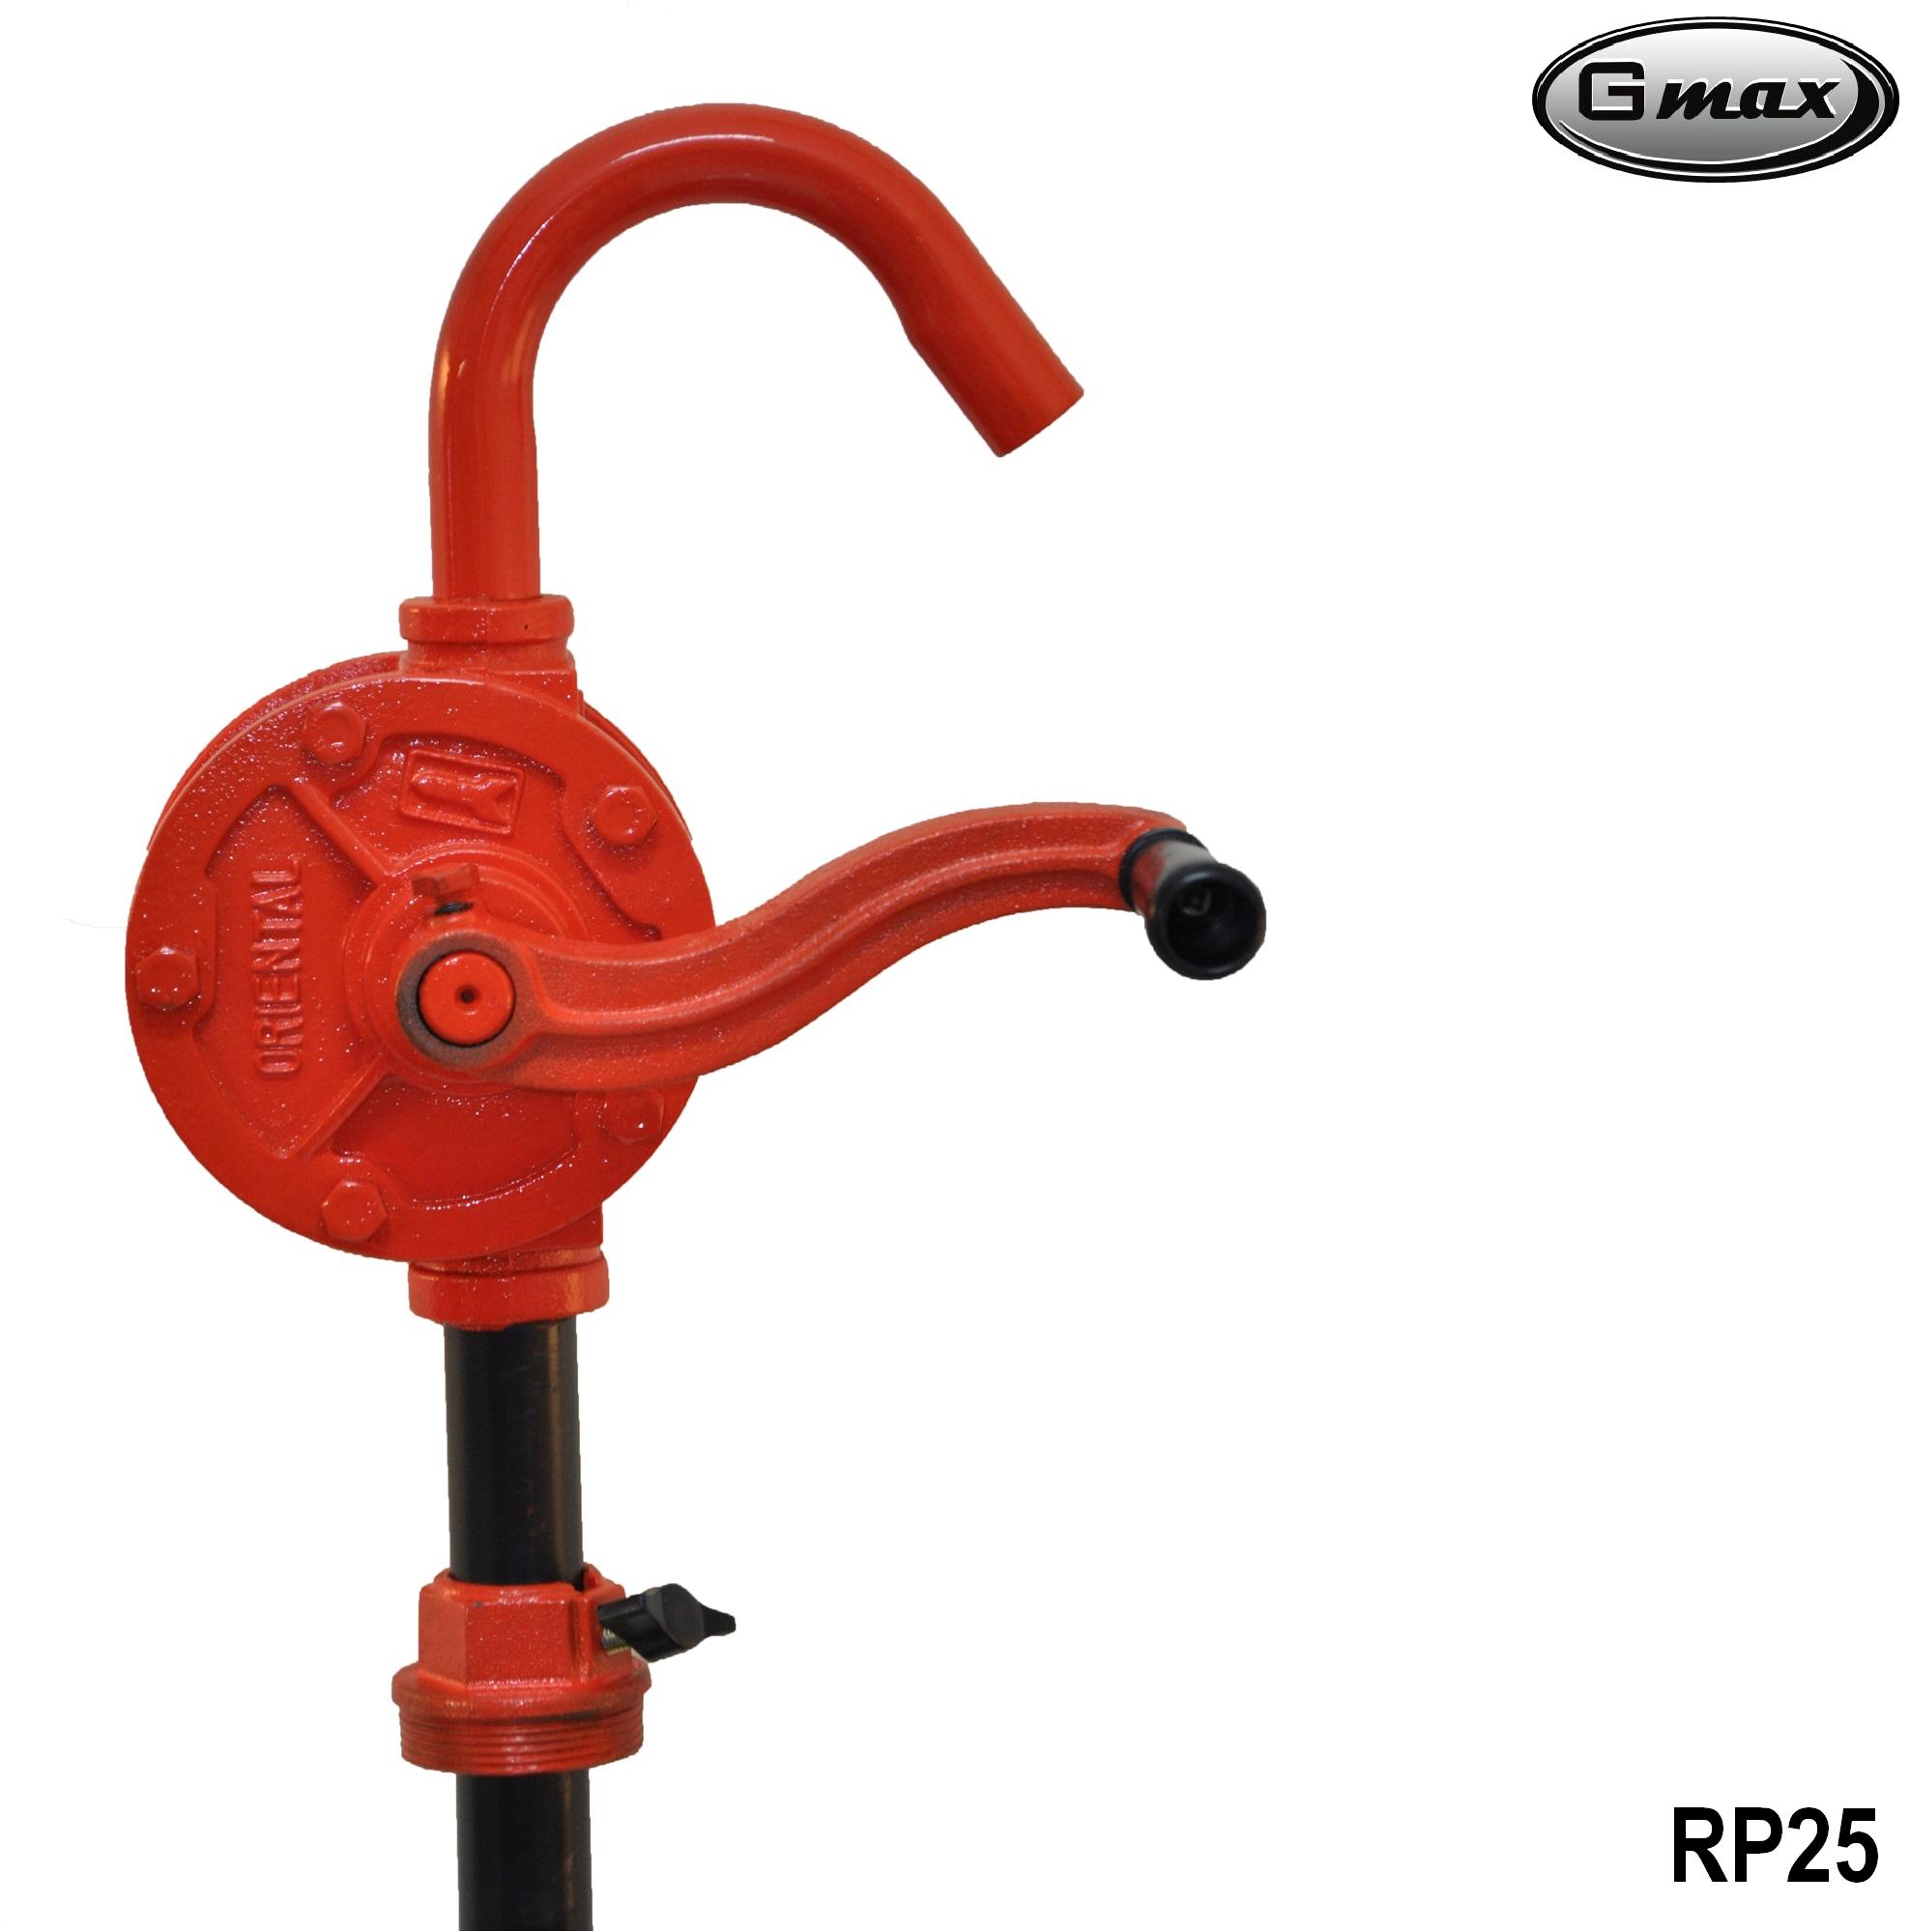 Gmax รุ่น RP25 มือหมุนสูบน้ำมันจากถัง 200ลิตร มือหมุนปั้มน้ำมัน Hand Rotary Oil Pump